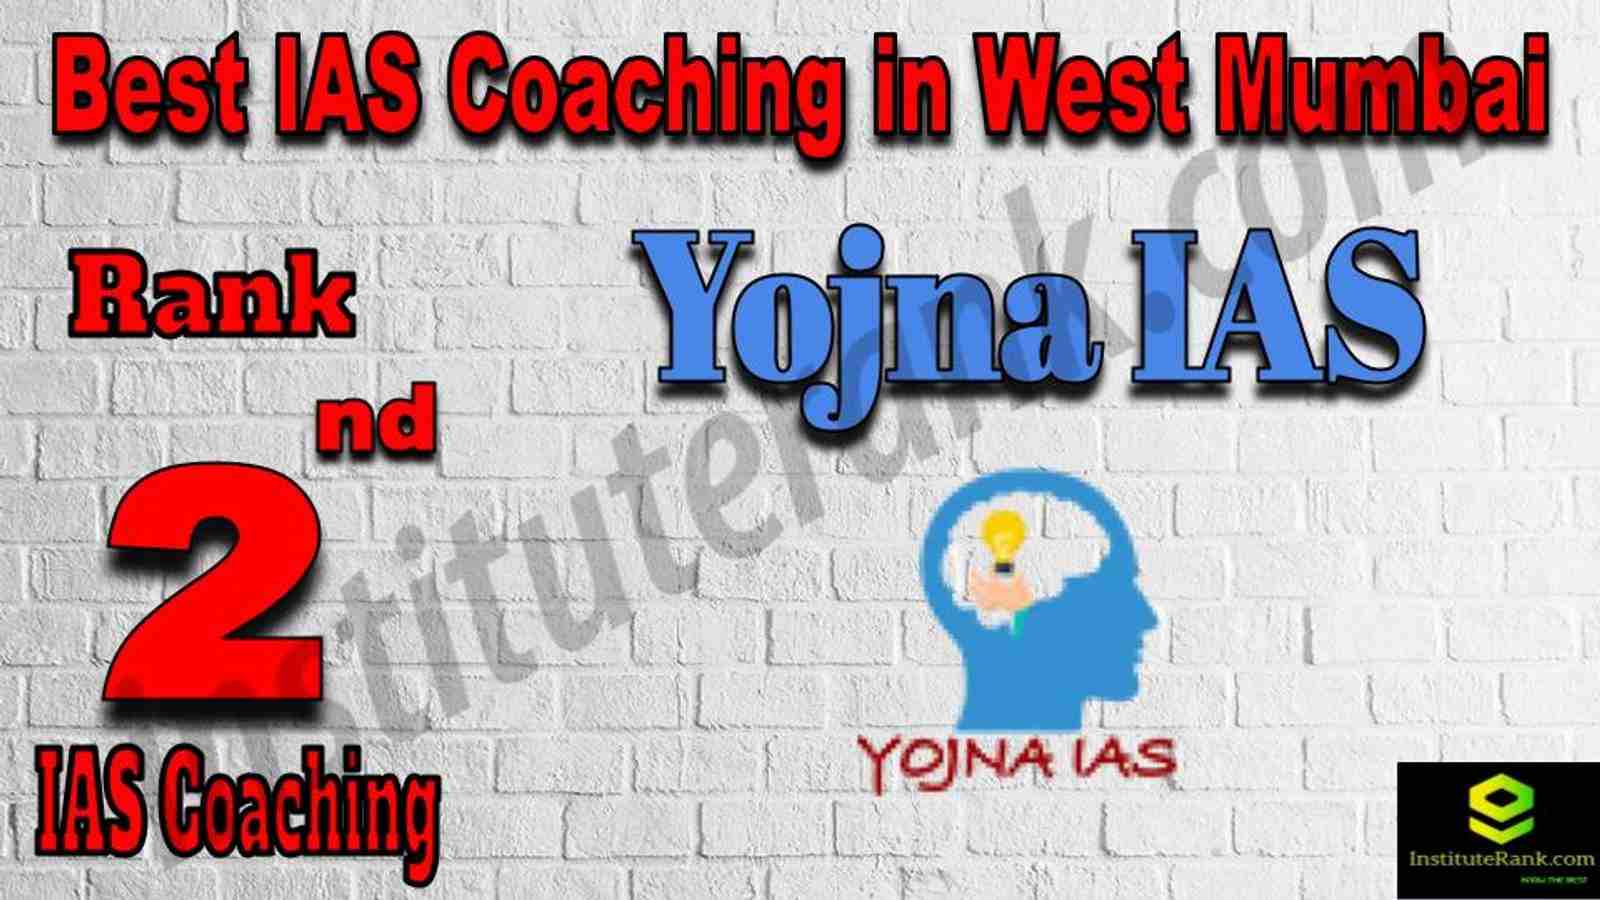 2nd Best IAS Coaching in West Mumbai